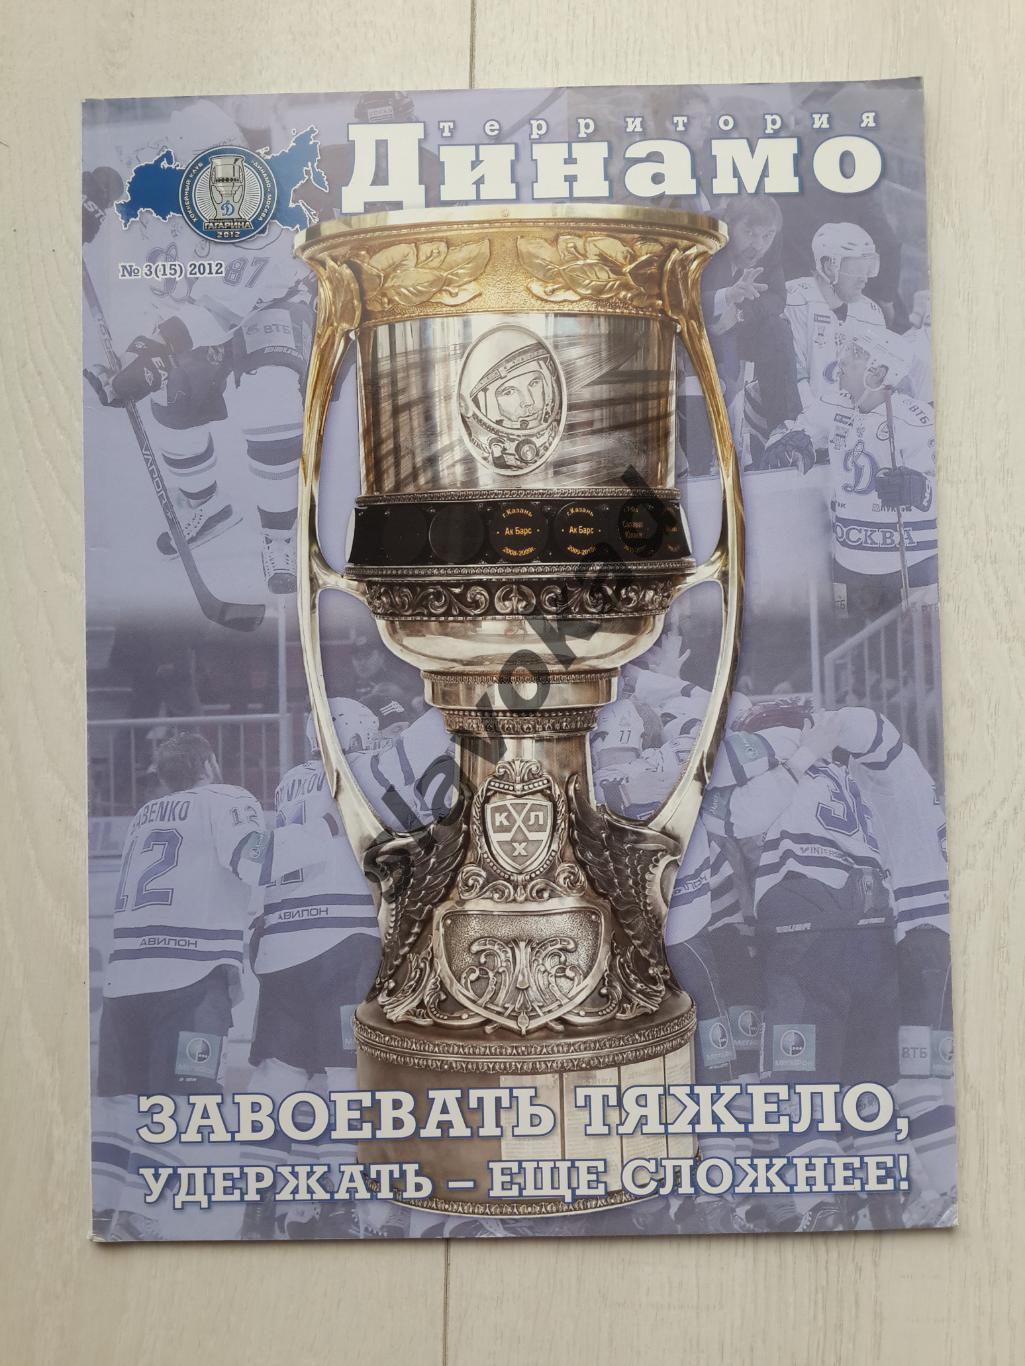 Территория Динамо № 3 (15) - 2012 год - официальный журнал ХК Динамо Москва